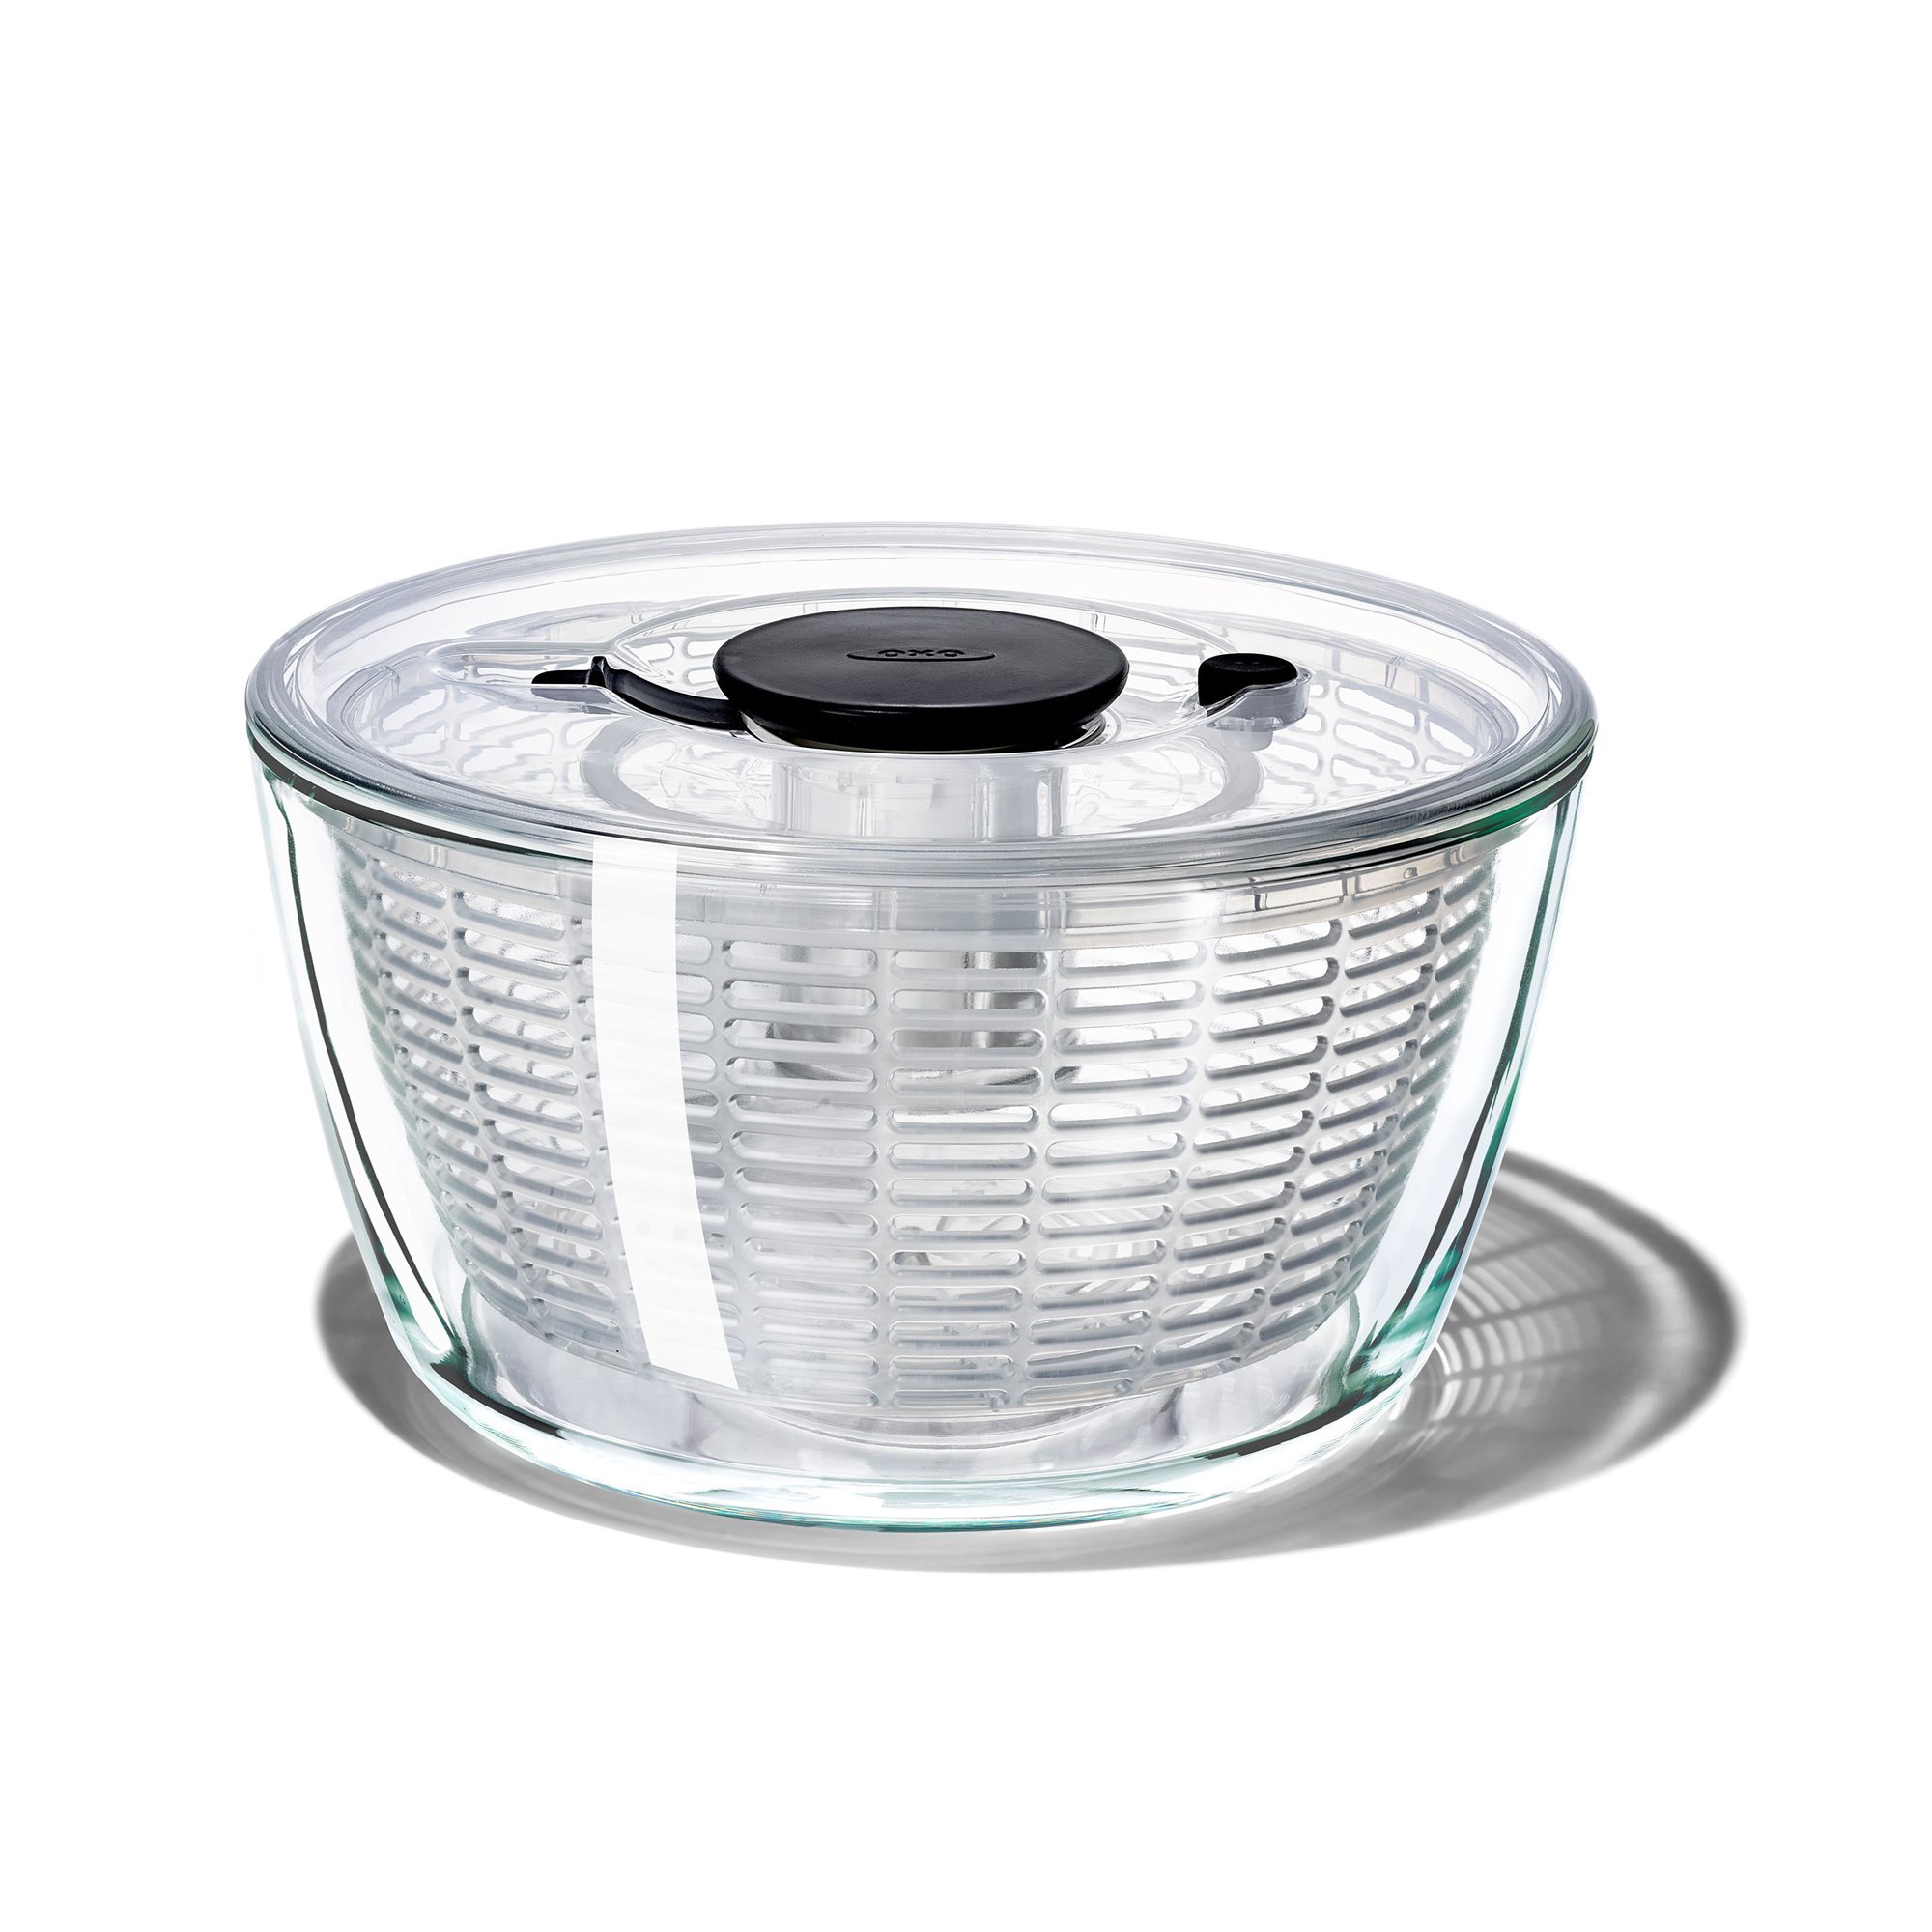 Centrifuga per insalata, ciotola in vetro, 4,1 L / 27 cm - OXO